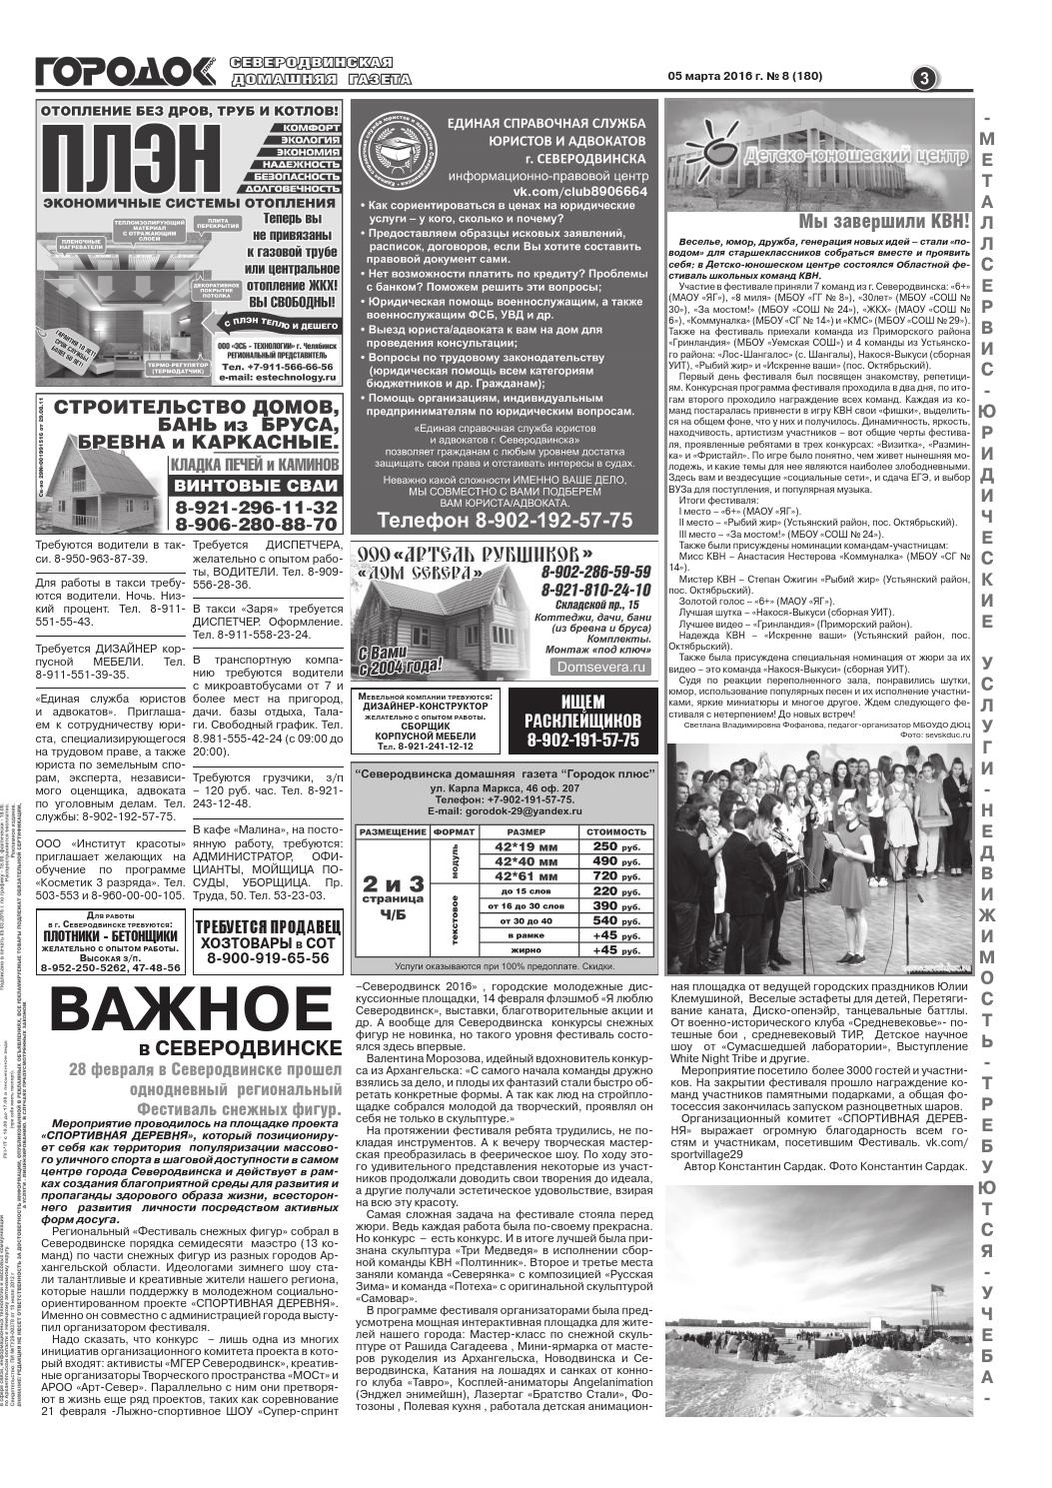 Городок плюс, выпуск номер 8 от 05 марта 2016 года, страница 3.